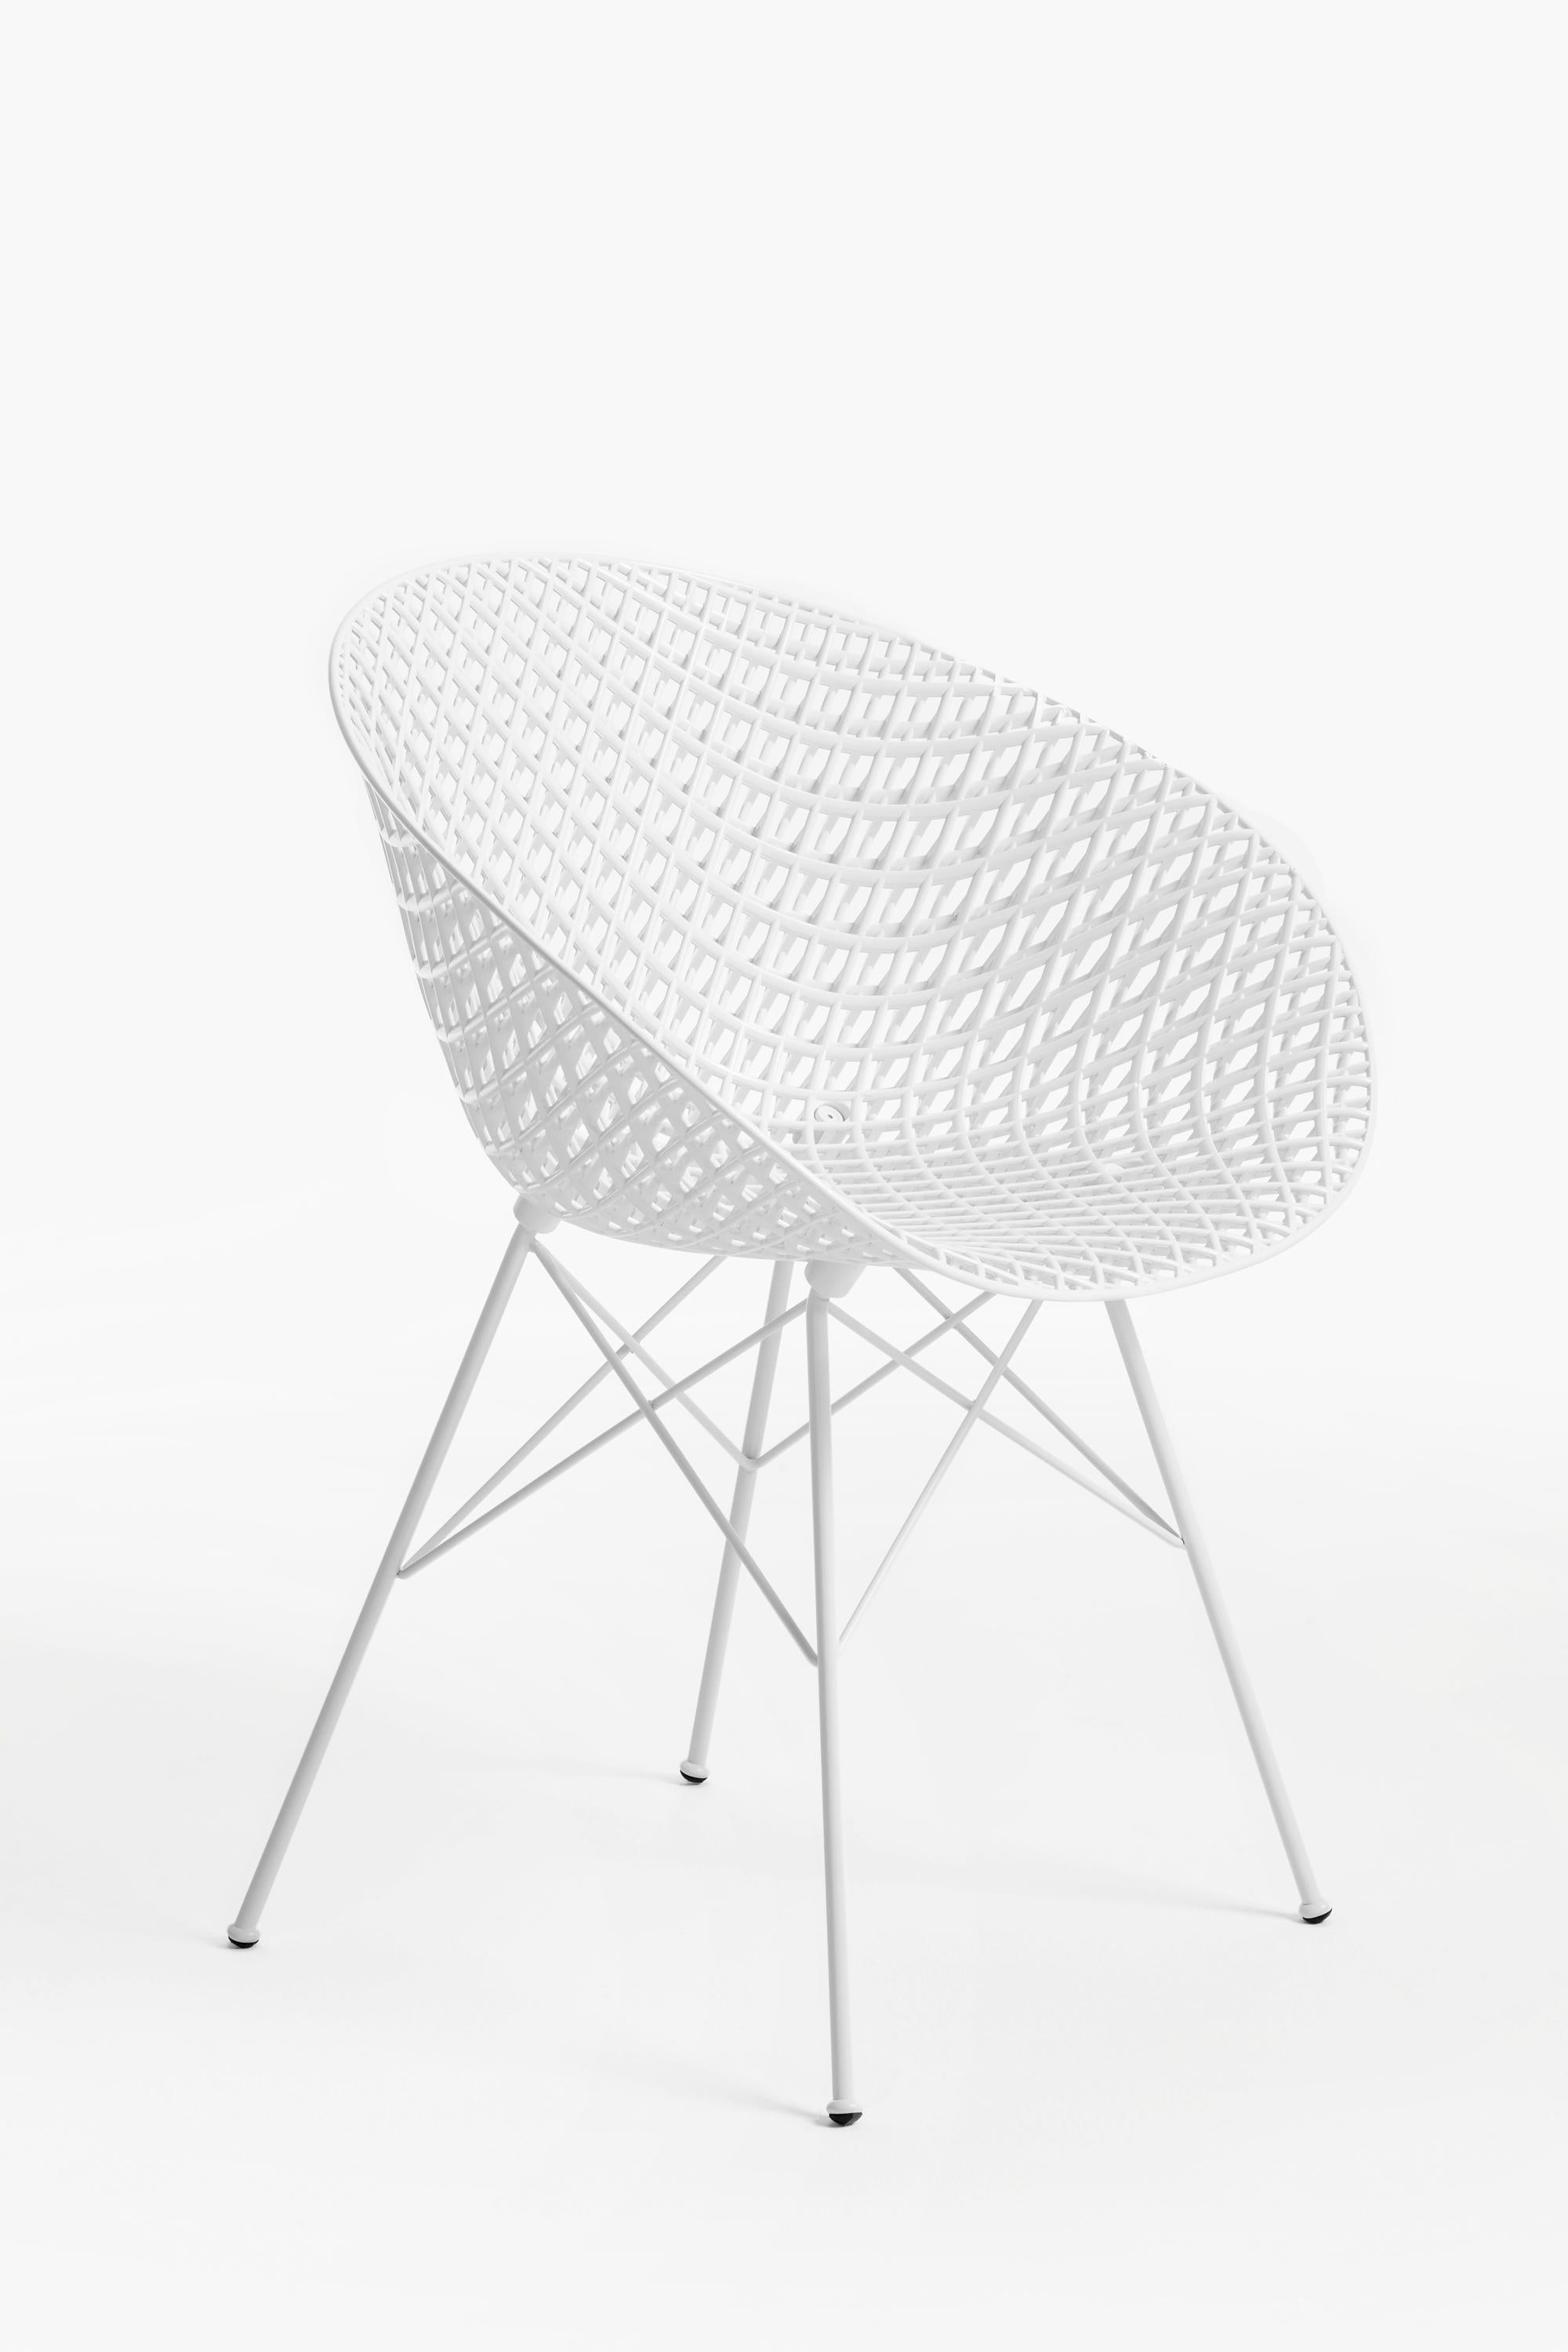 L'interaction constante entre le design et l'innovation technologique a conduit à la création de Smatrik, la dernière interprétation d'une chaise, conçue par Tokujin Yoshioka. Il est doté d'un cadre innovant qui crée un effet tridimensionnel, ce qui